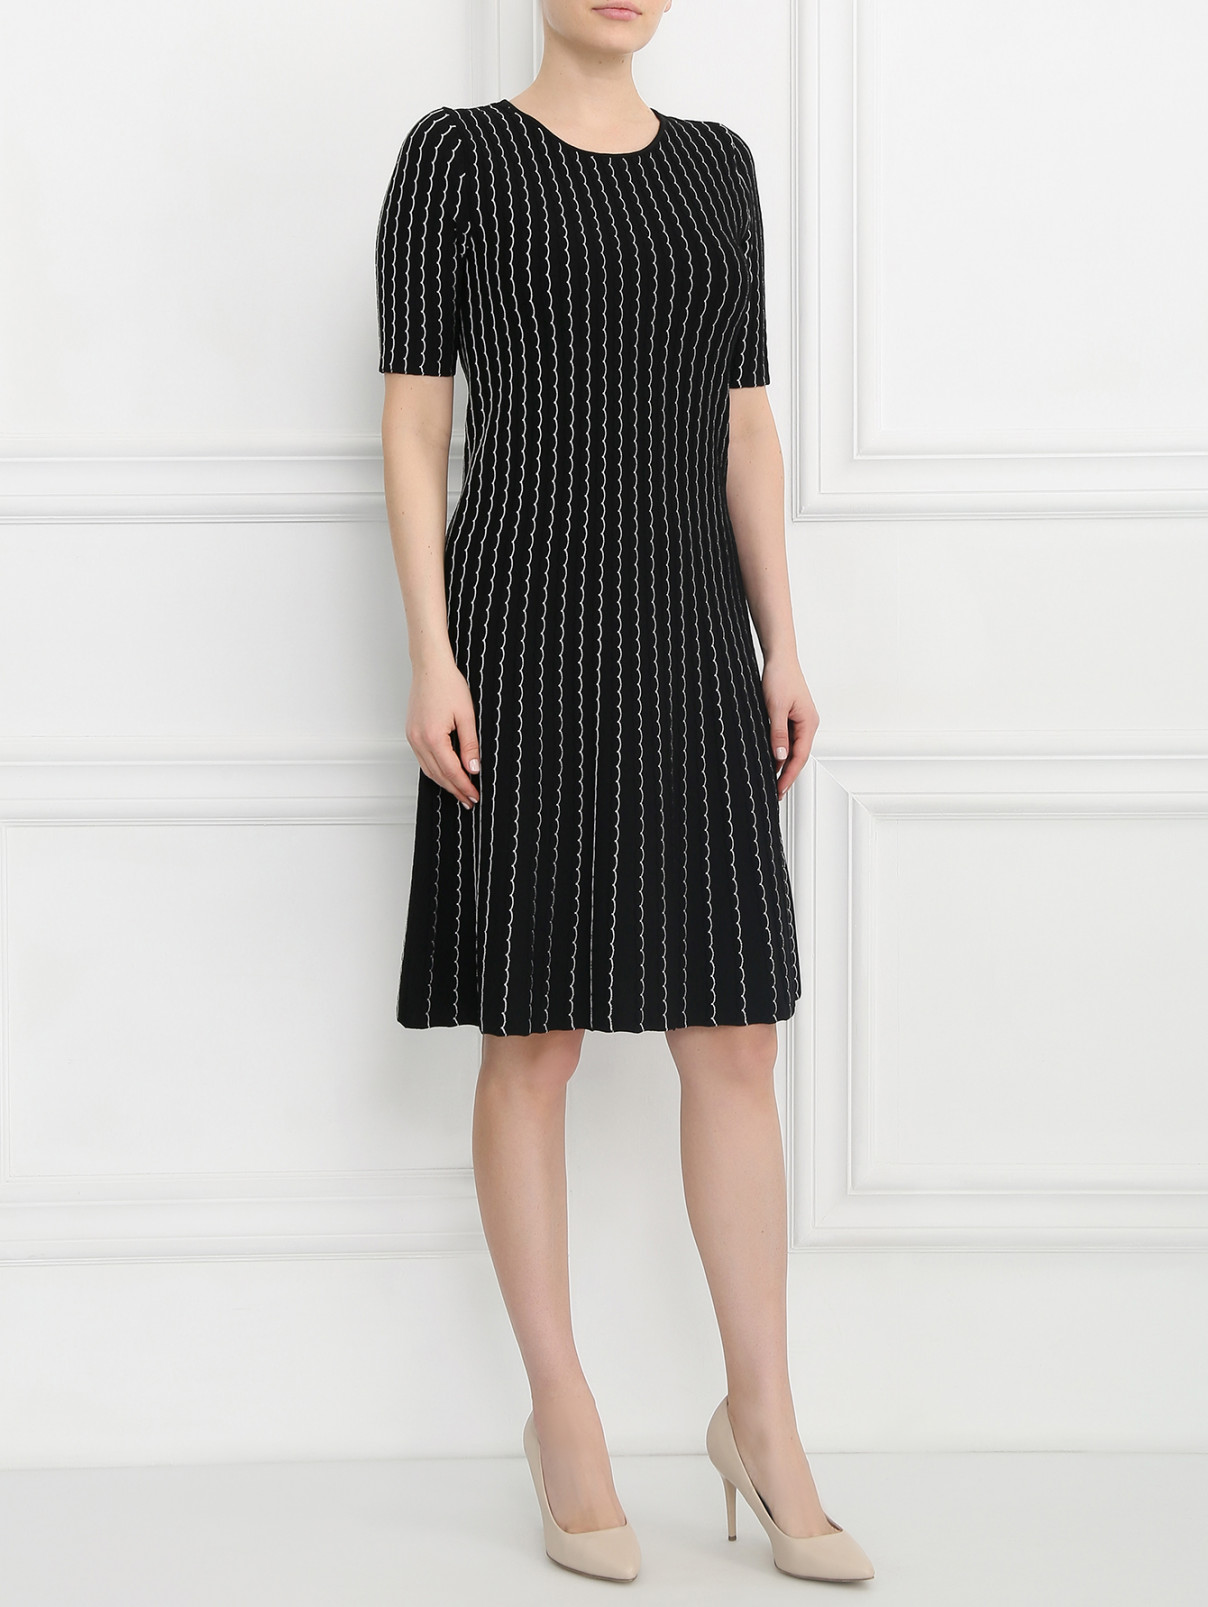 Платье с узором и короткими рукавами Armani Collezioni  –  Модель Общий вид  – Цвет:  Черный